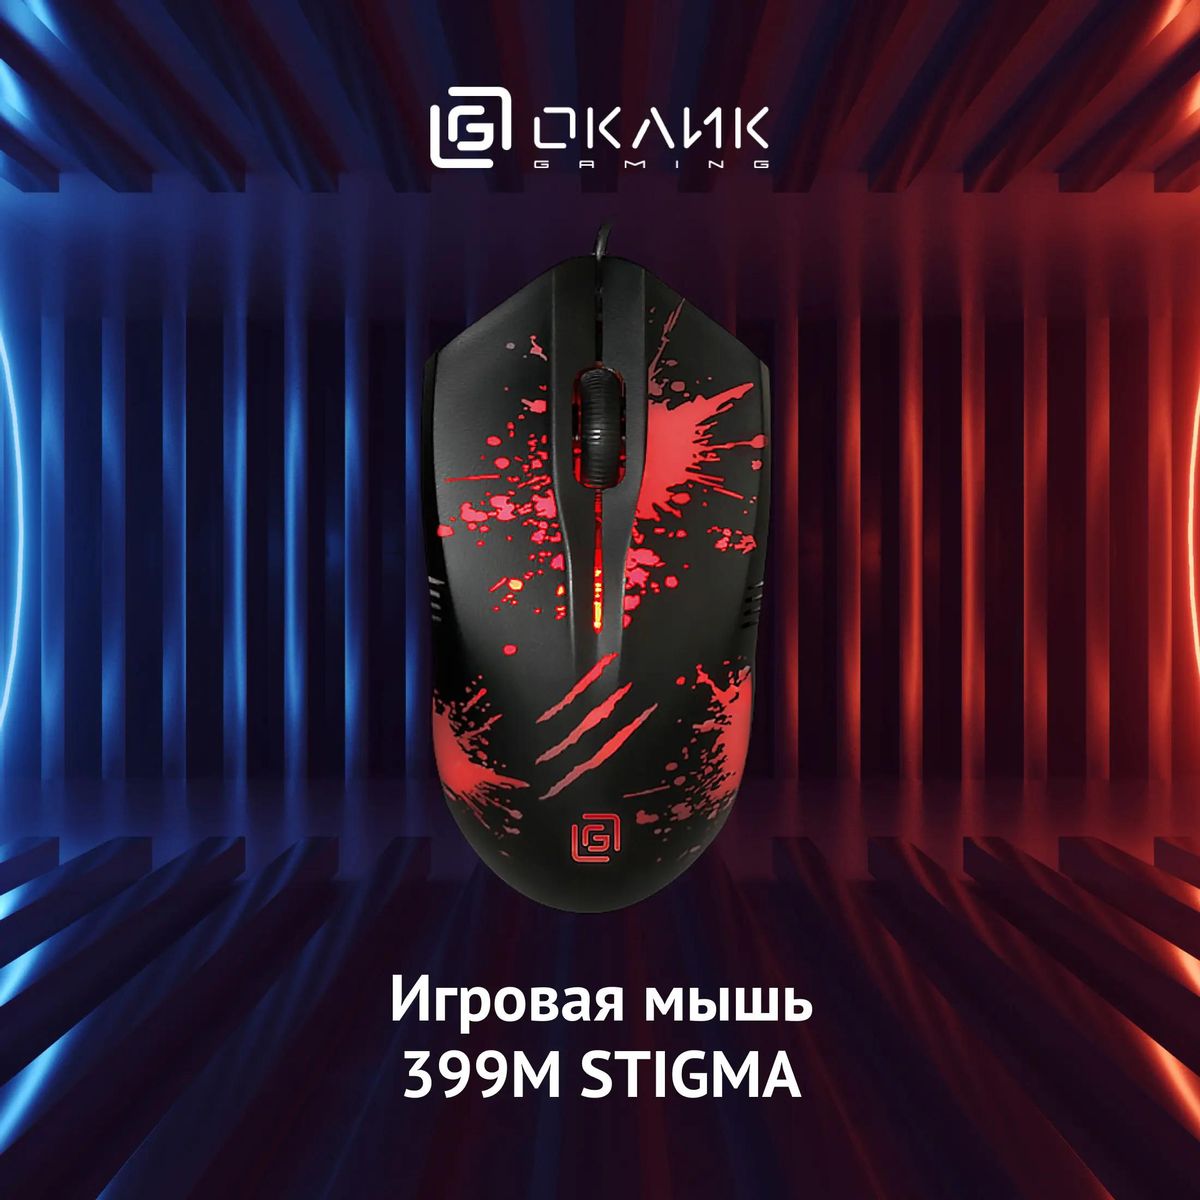 Мышь Oklick 399M STIGMA, проводная, USB, черный